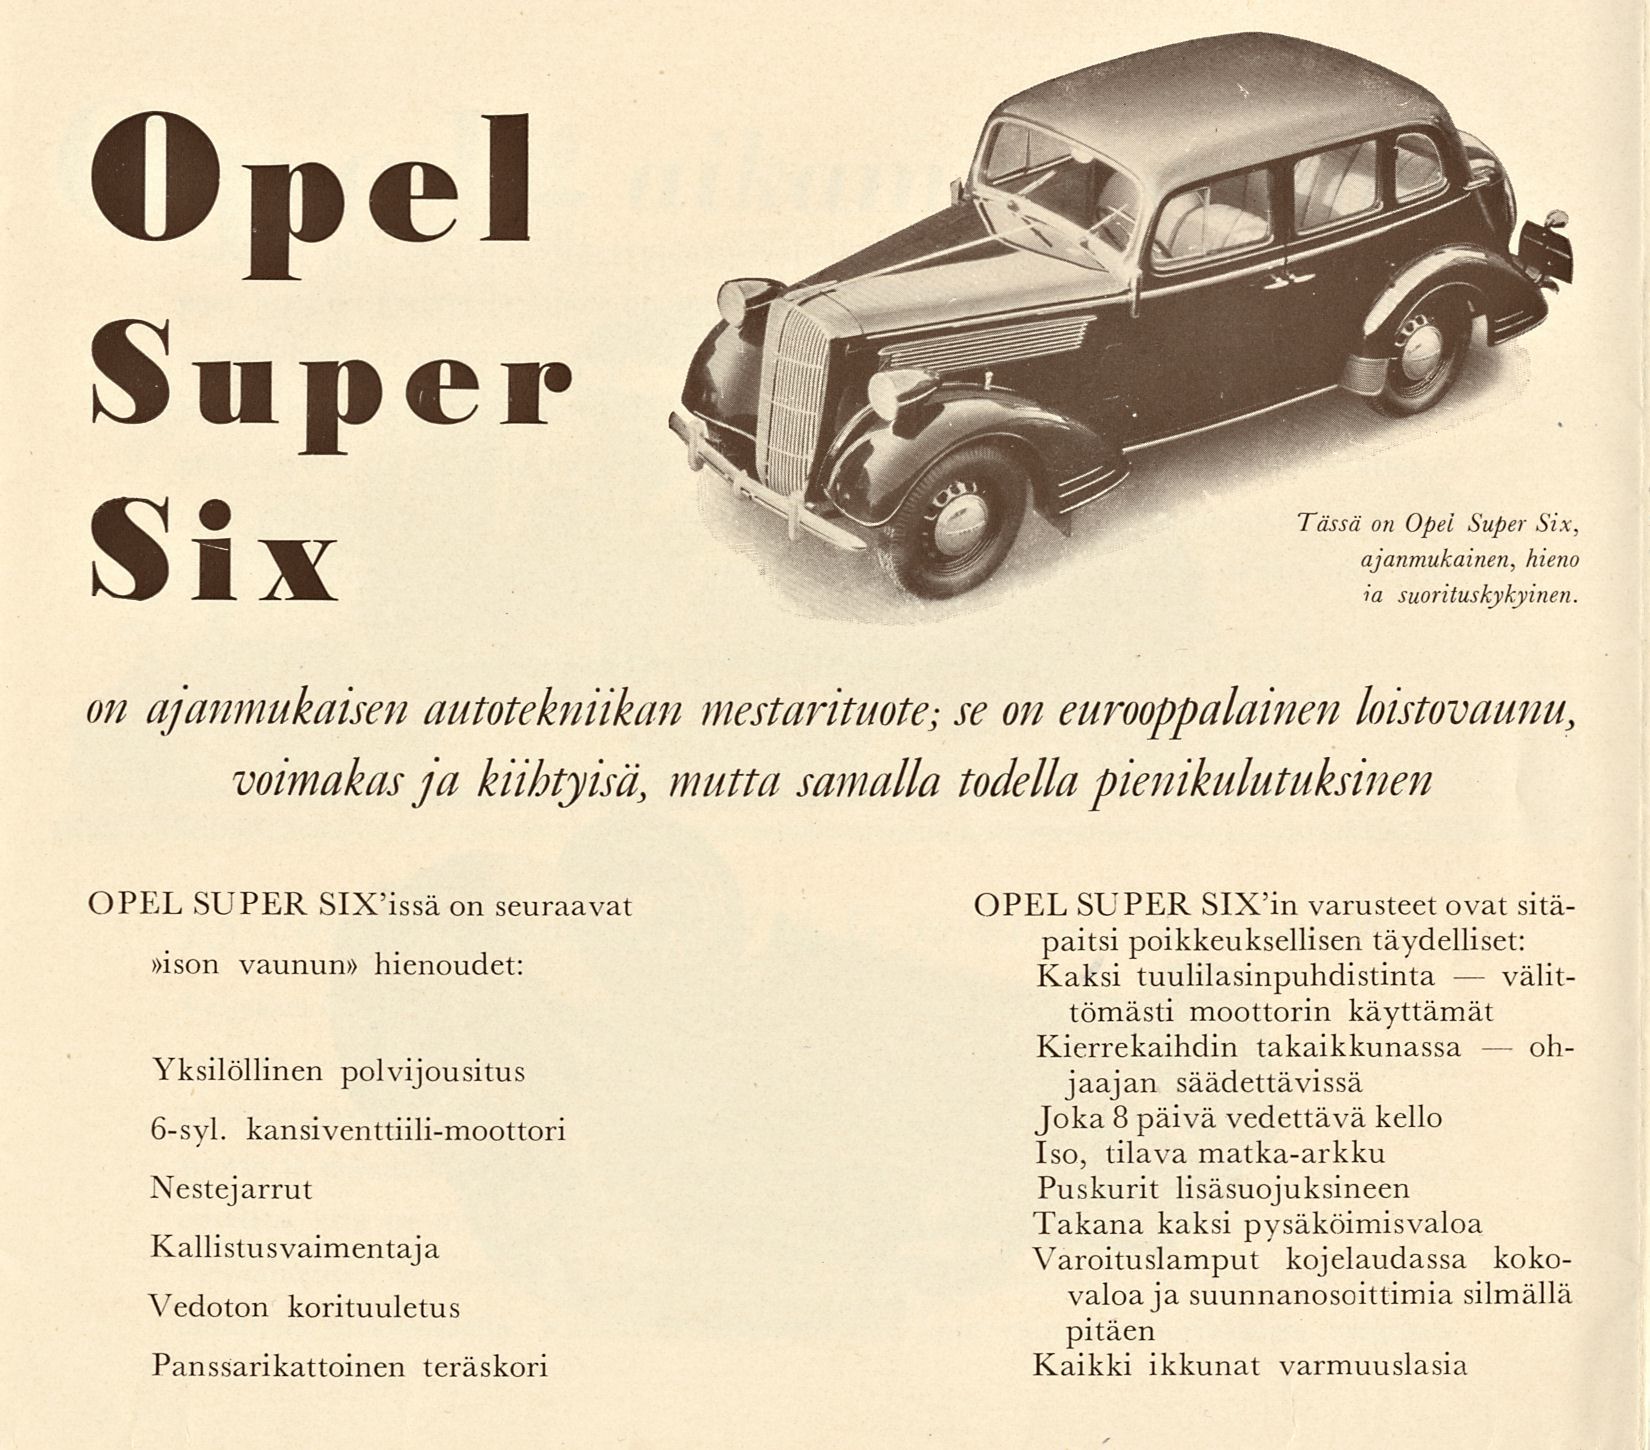 Opel Super Six Tässä on Opel Super Six, ajanmukainen, hieno ia suorituskykyinen.